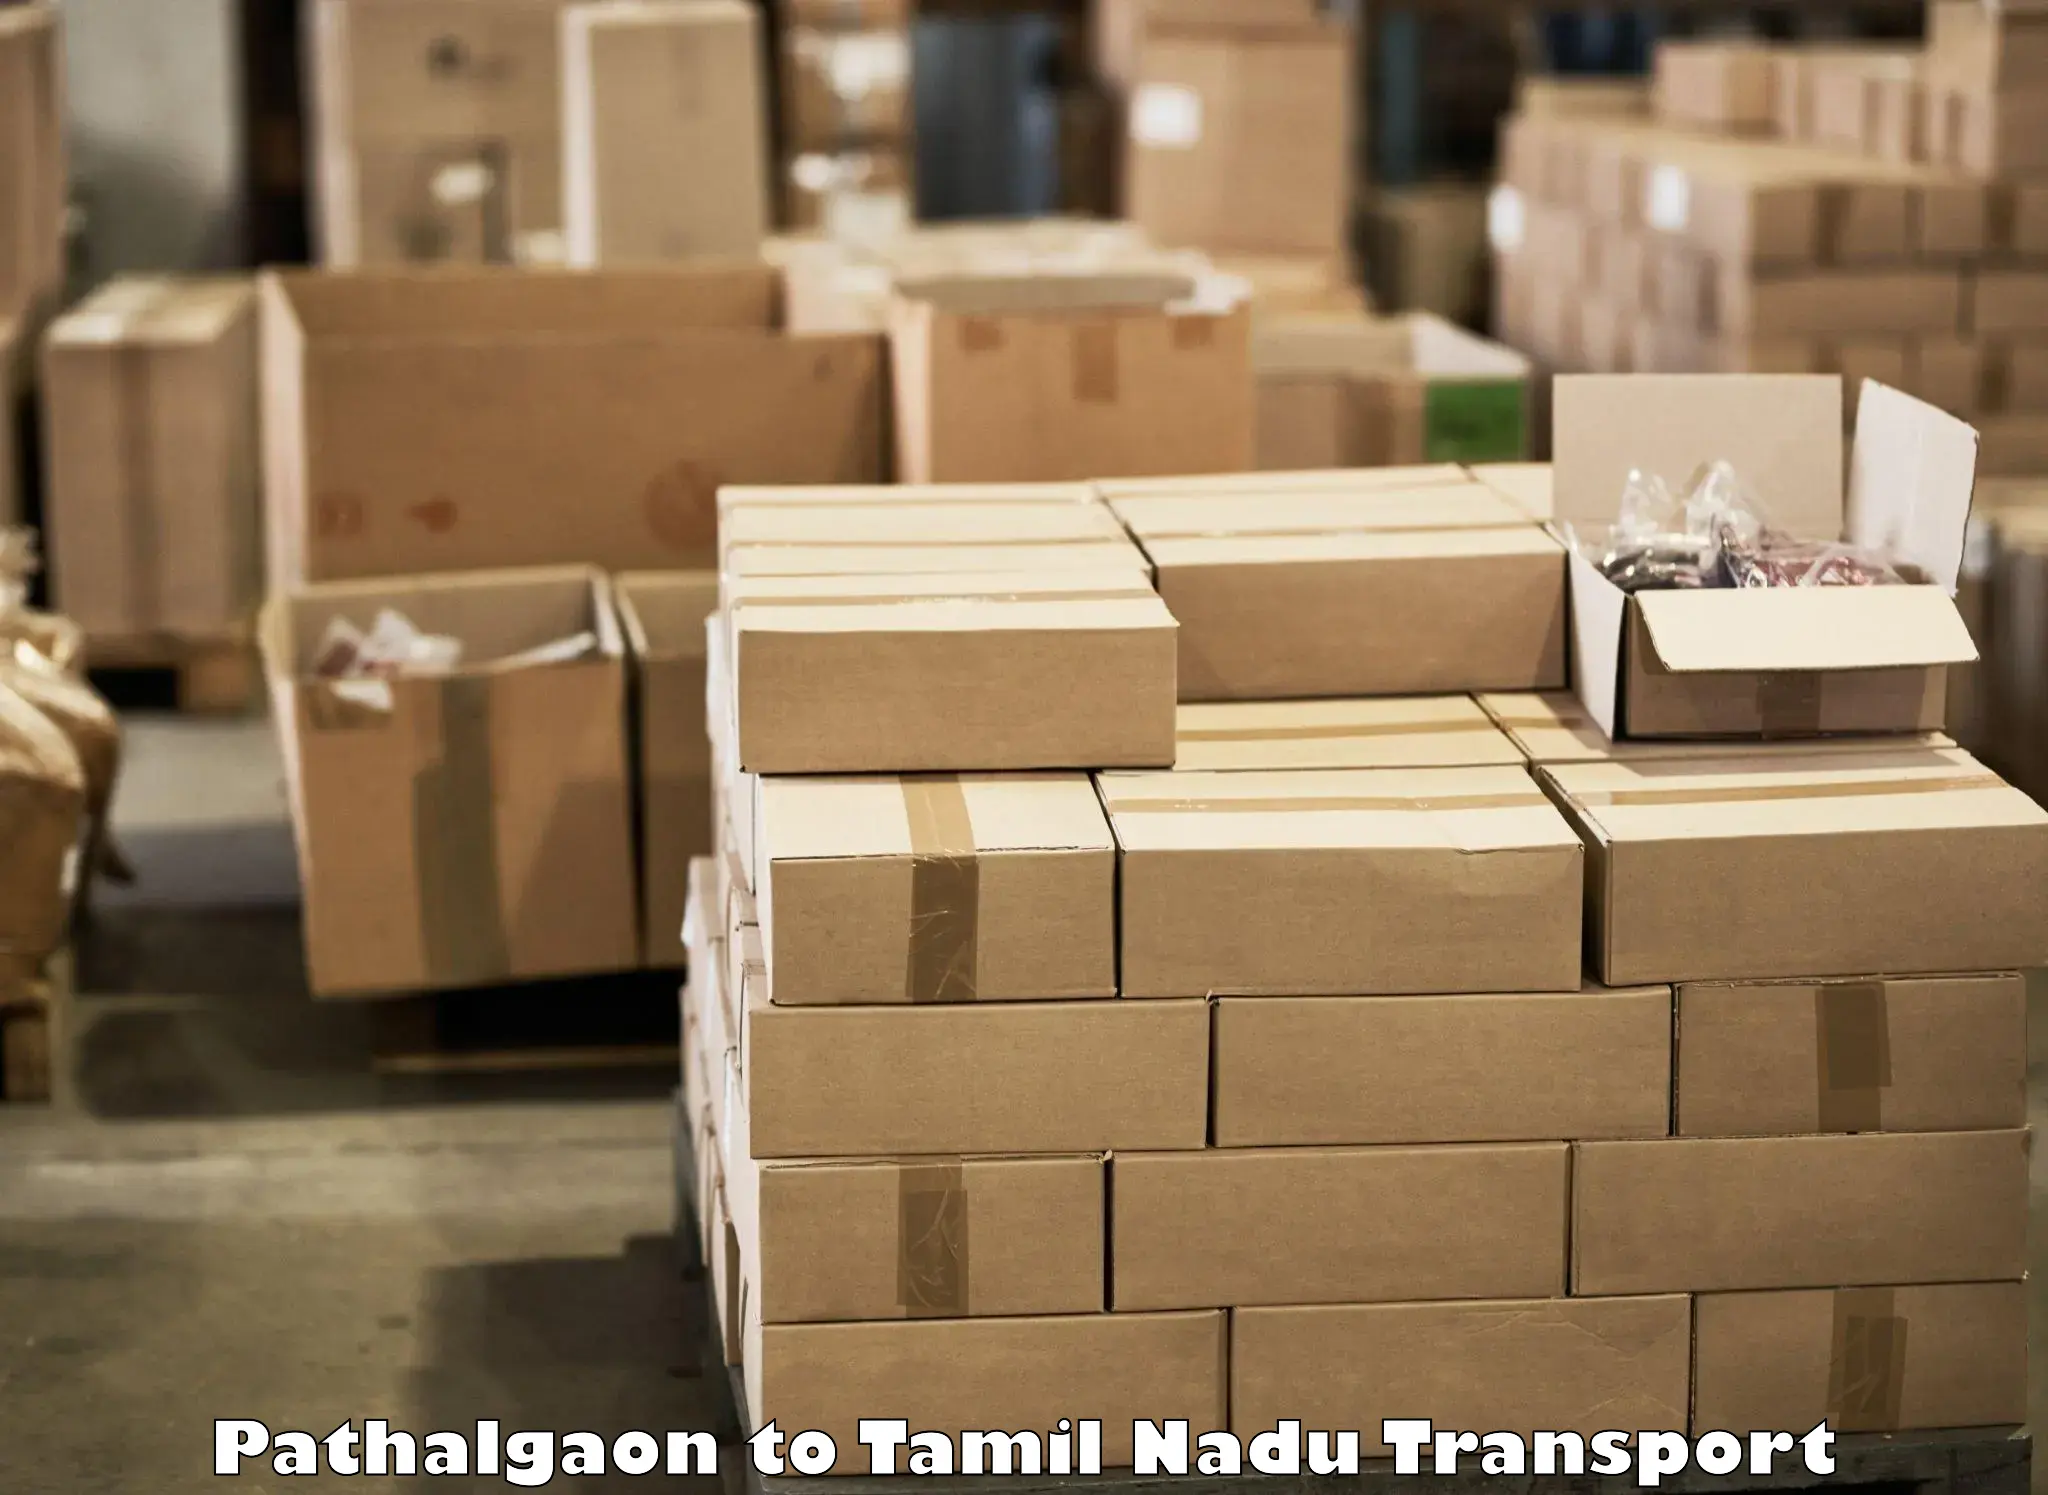 Interstate transport services Pathalgaon to Madurai Kamraj University